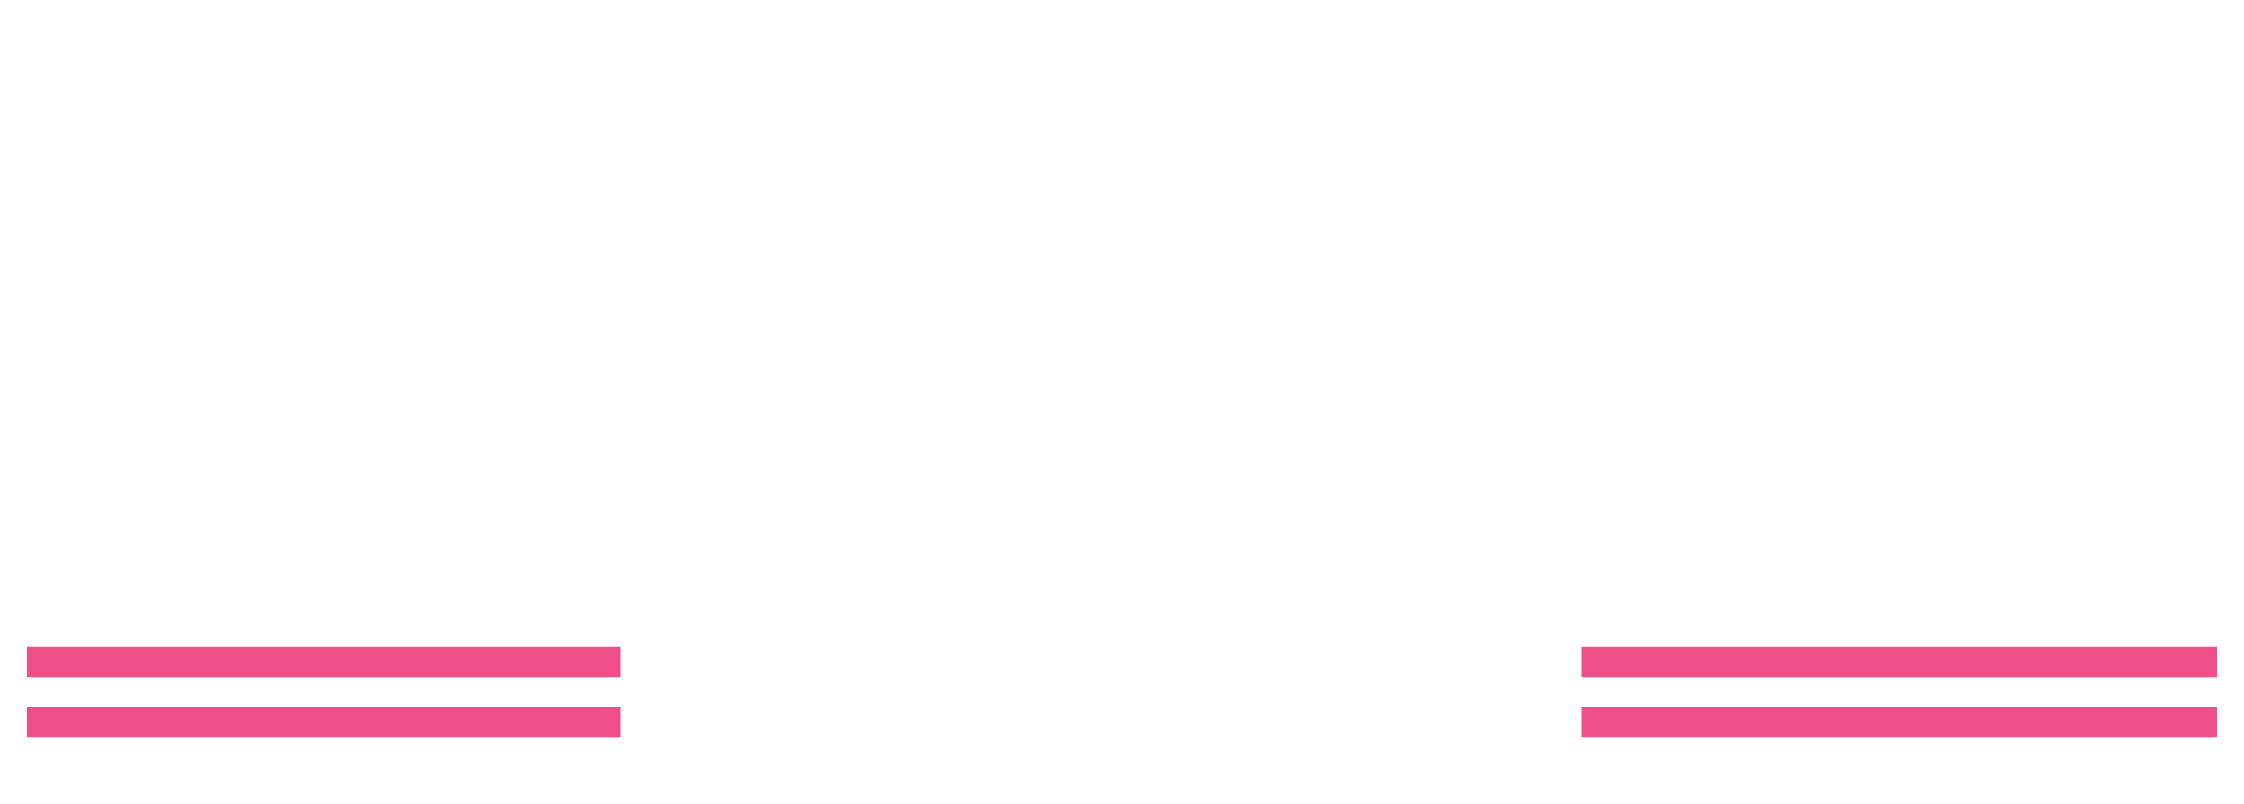 Ohio Democratic Women’s Caucus Signup Form